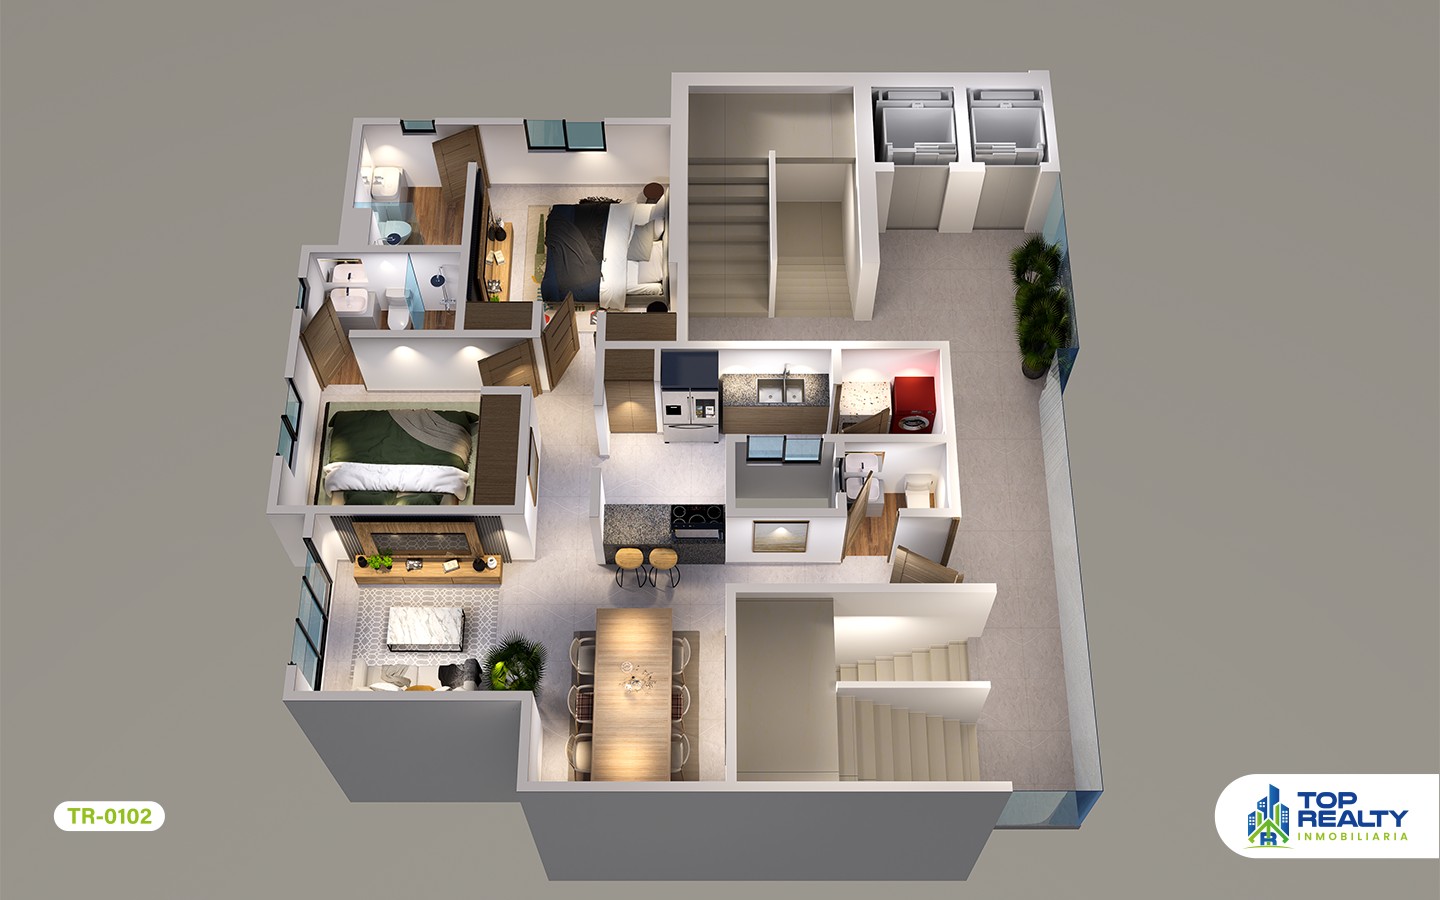 apartamentos - TR-0102-B Estilo y Comodidad: Residencias 2 Hab. con Amenidades Premium 8